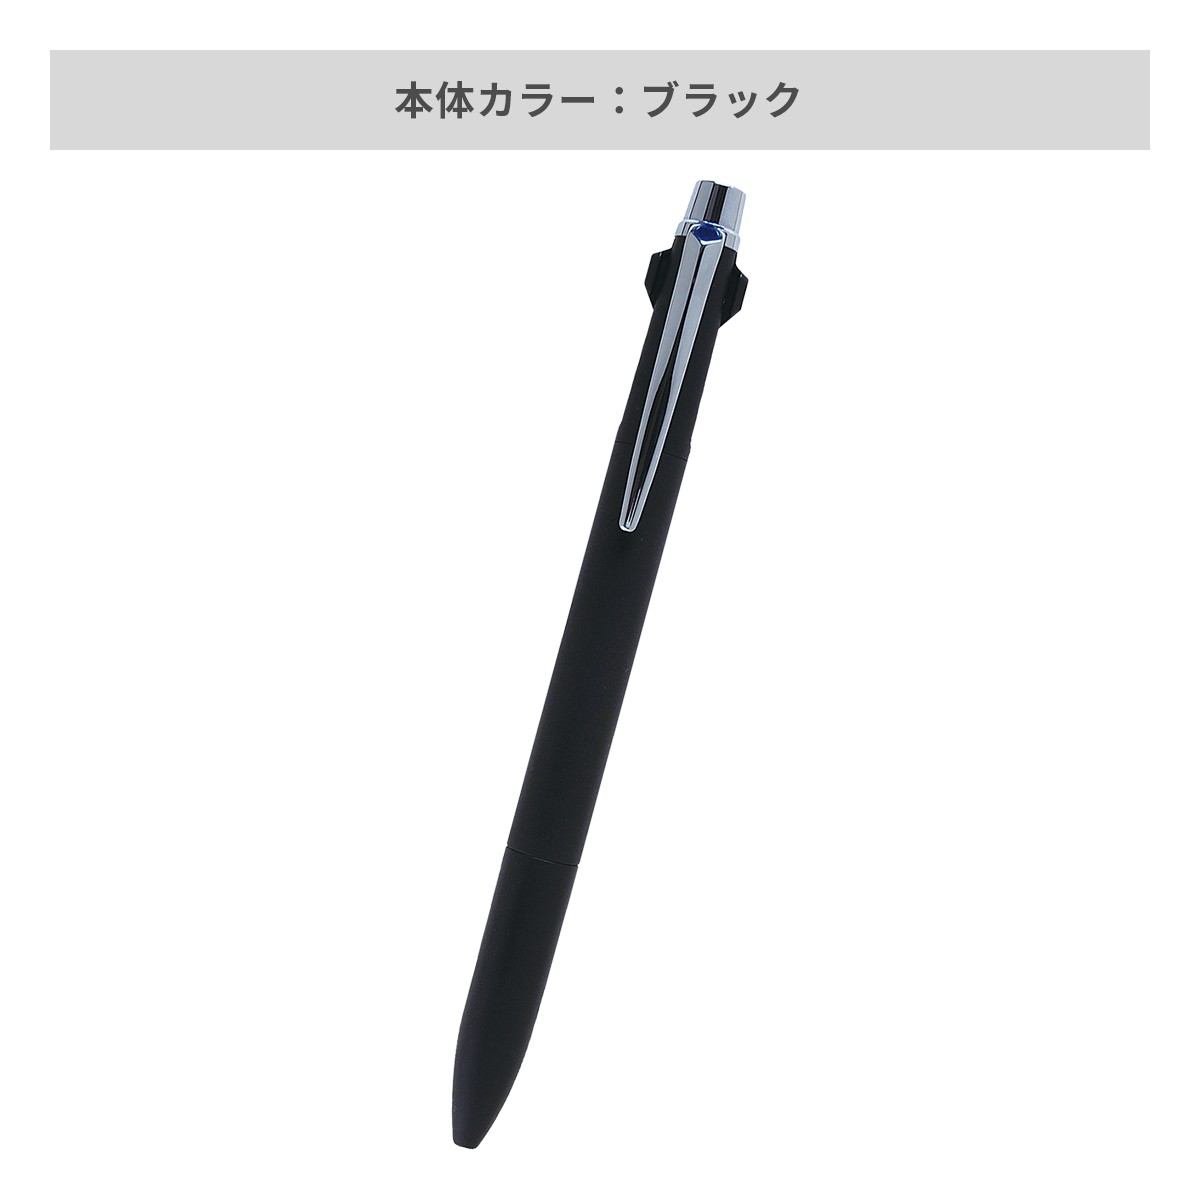 【短納期】三菱鉛筆 ジェットストリーム プライム 多機能ペン 2&1 0.7mm【多機能ペン / レーザー彫刻】 画像3